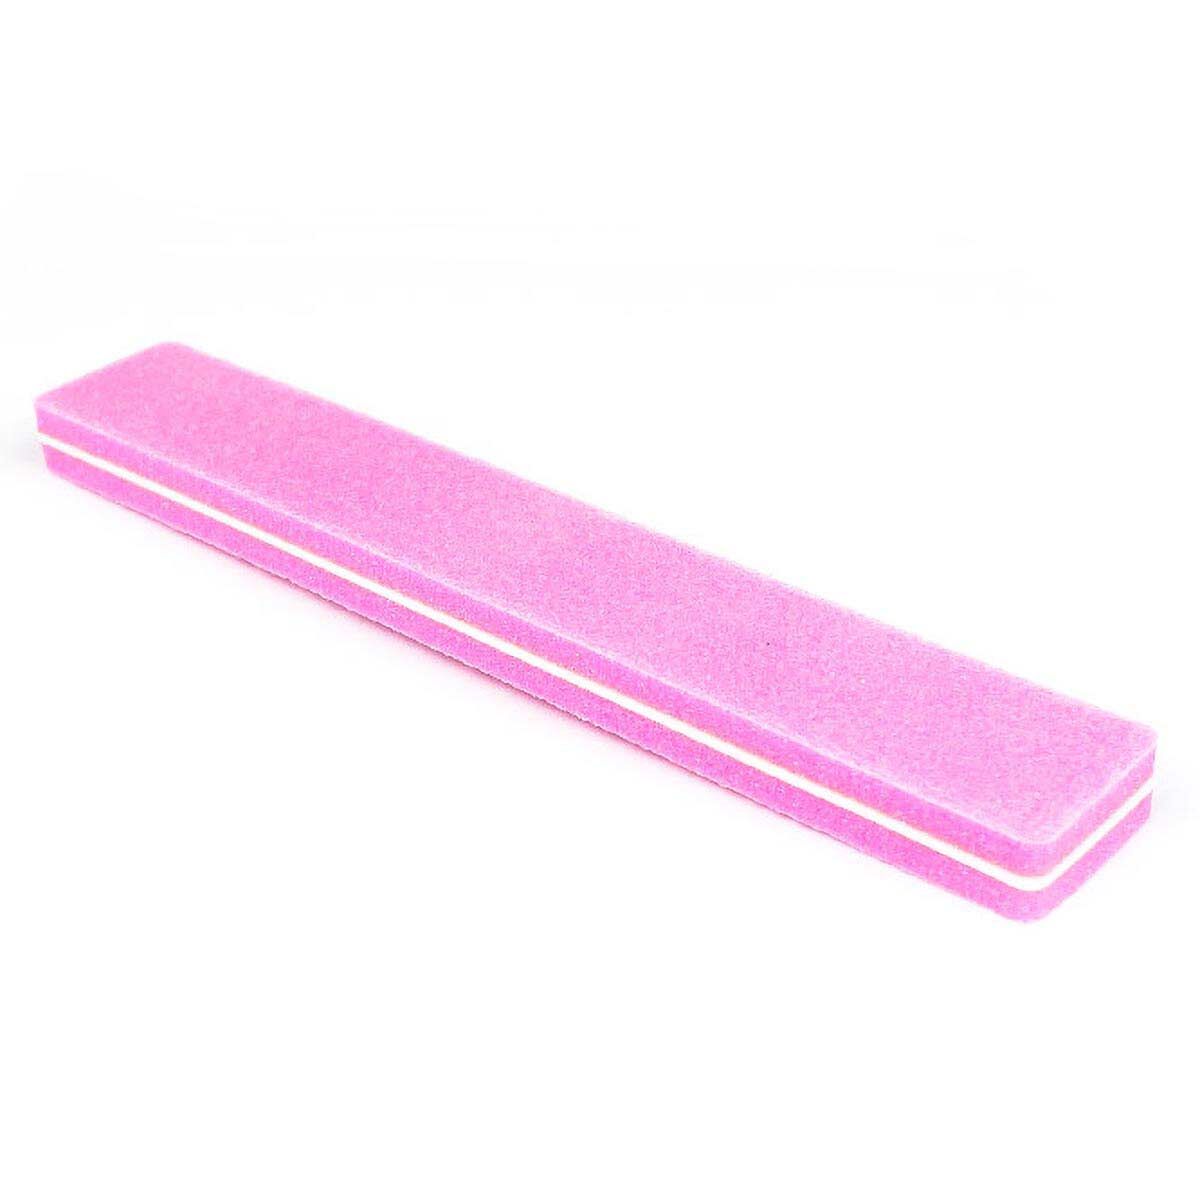 Blok polerski w kształcie pilnika różowy